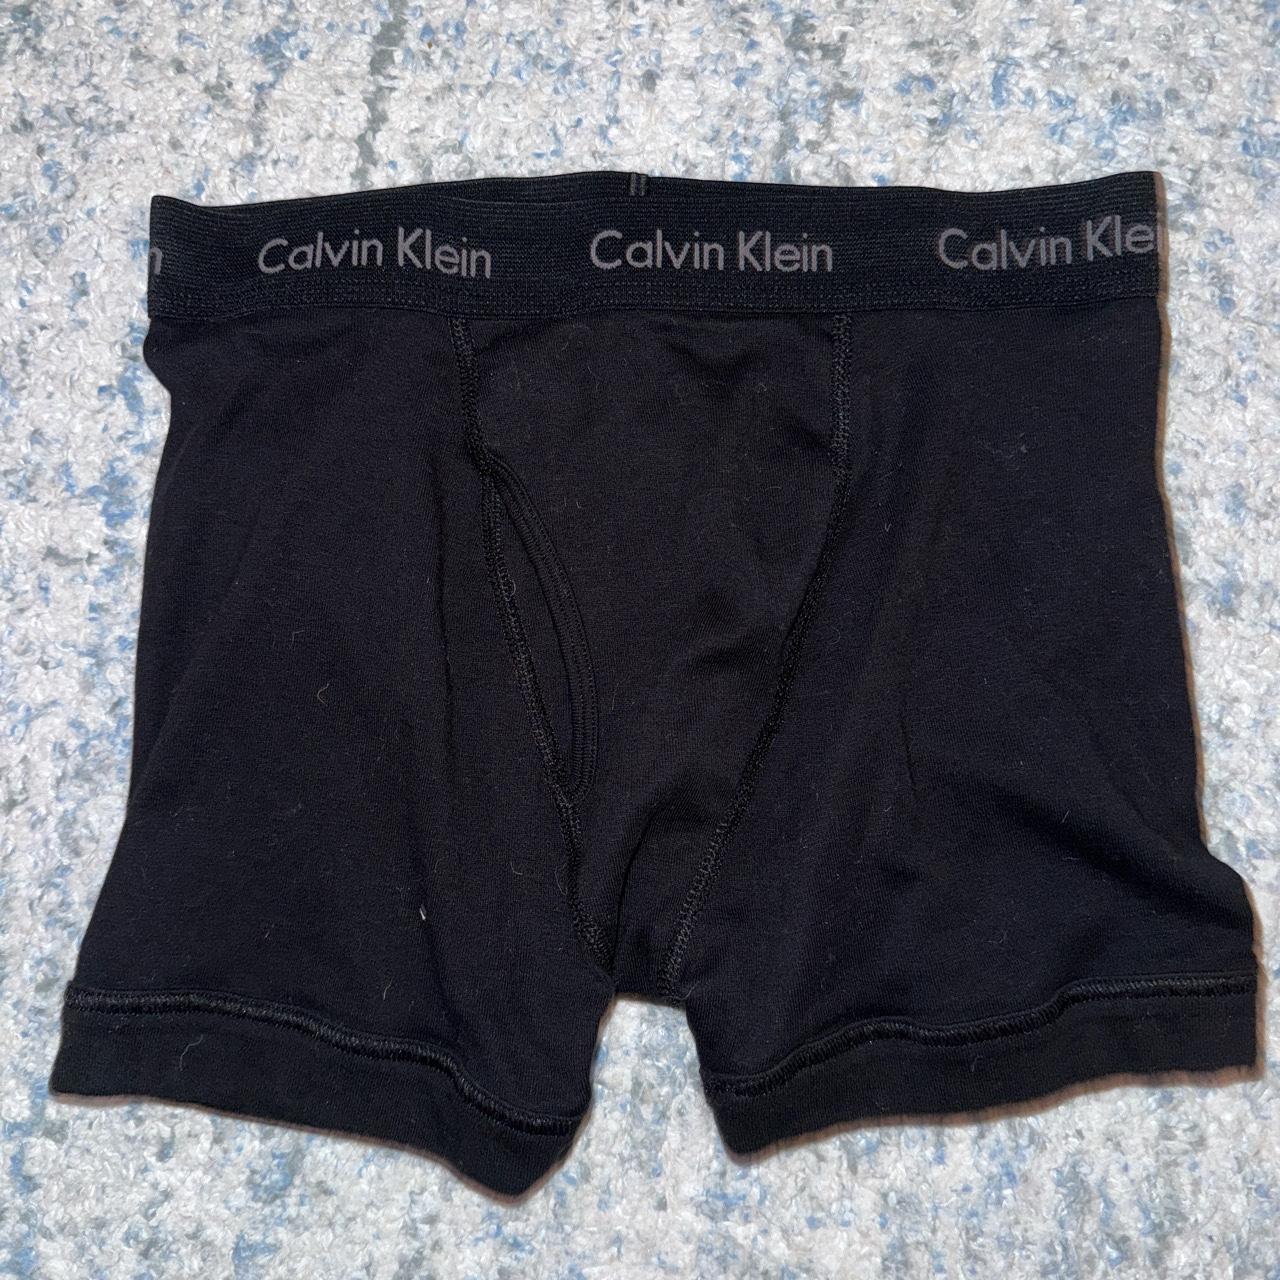 Matching hello kitty Calvin Klein underwear Message - Depop